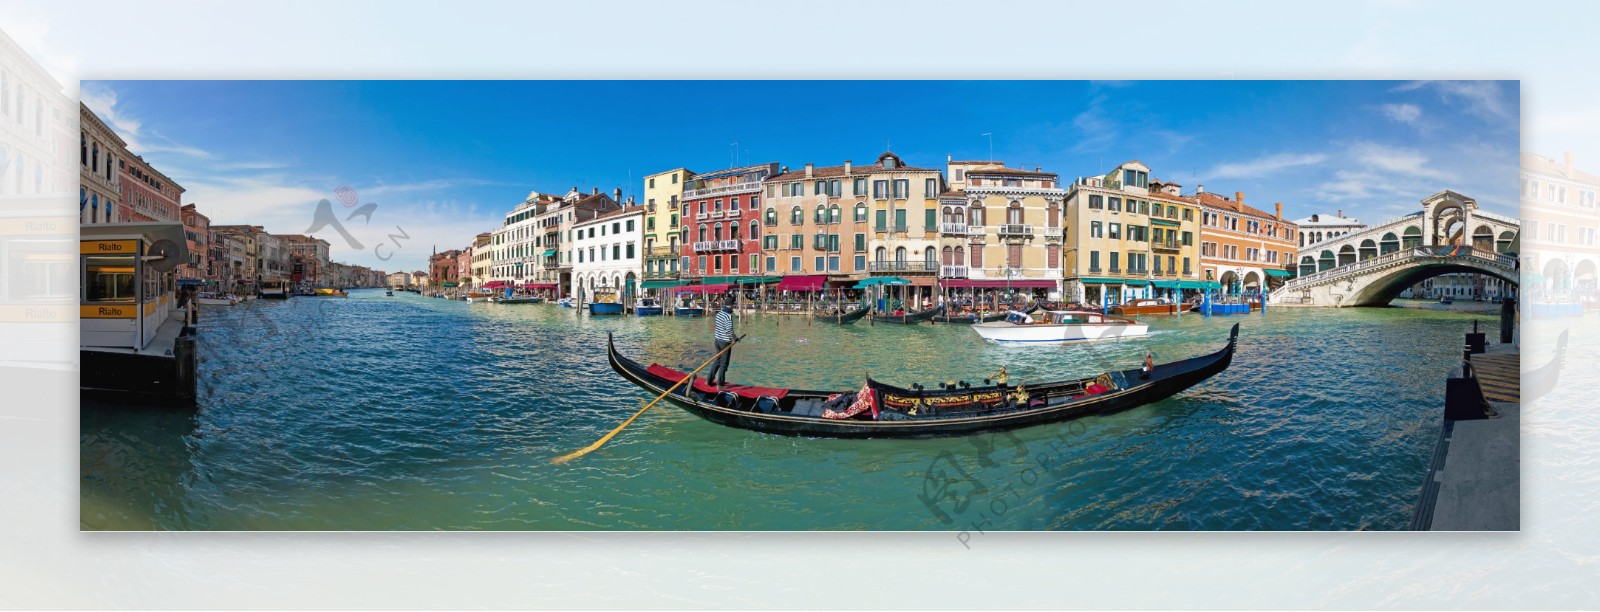 威尼斯水城全景宽幅高图片